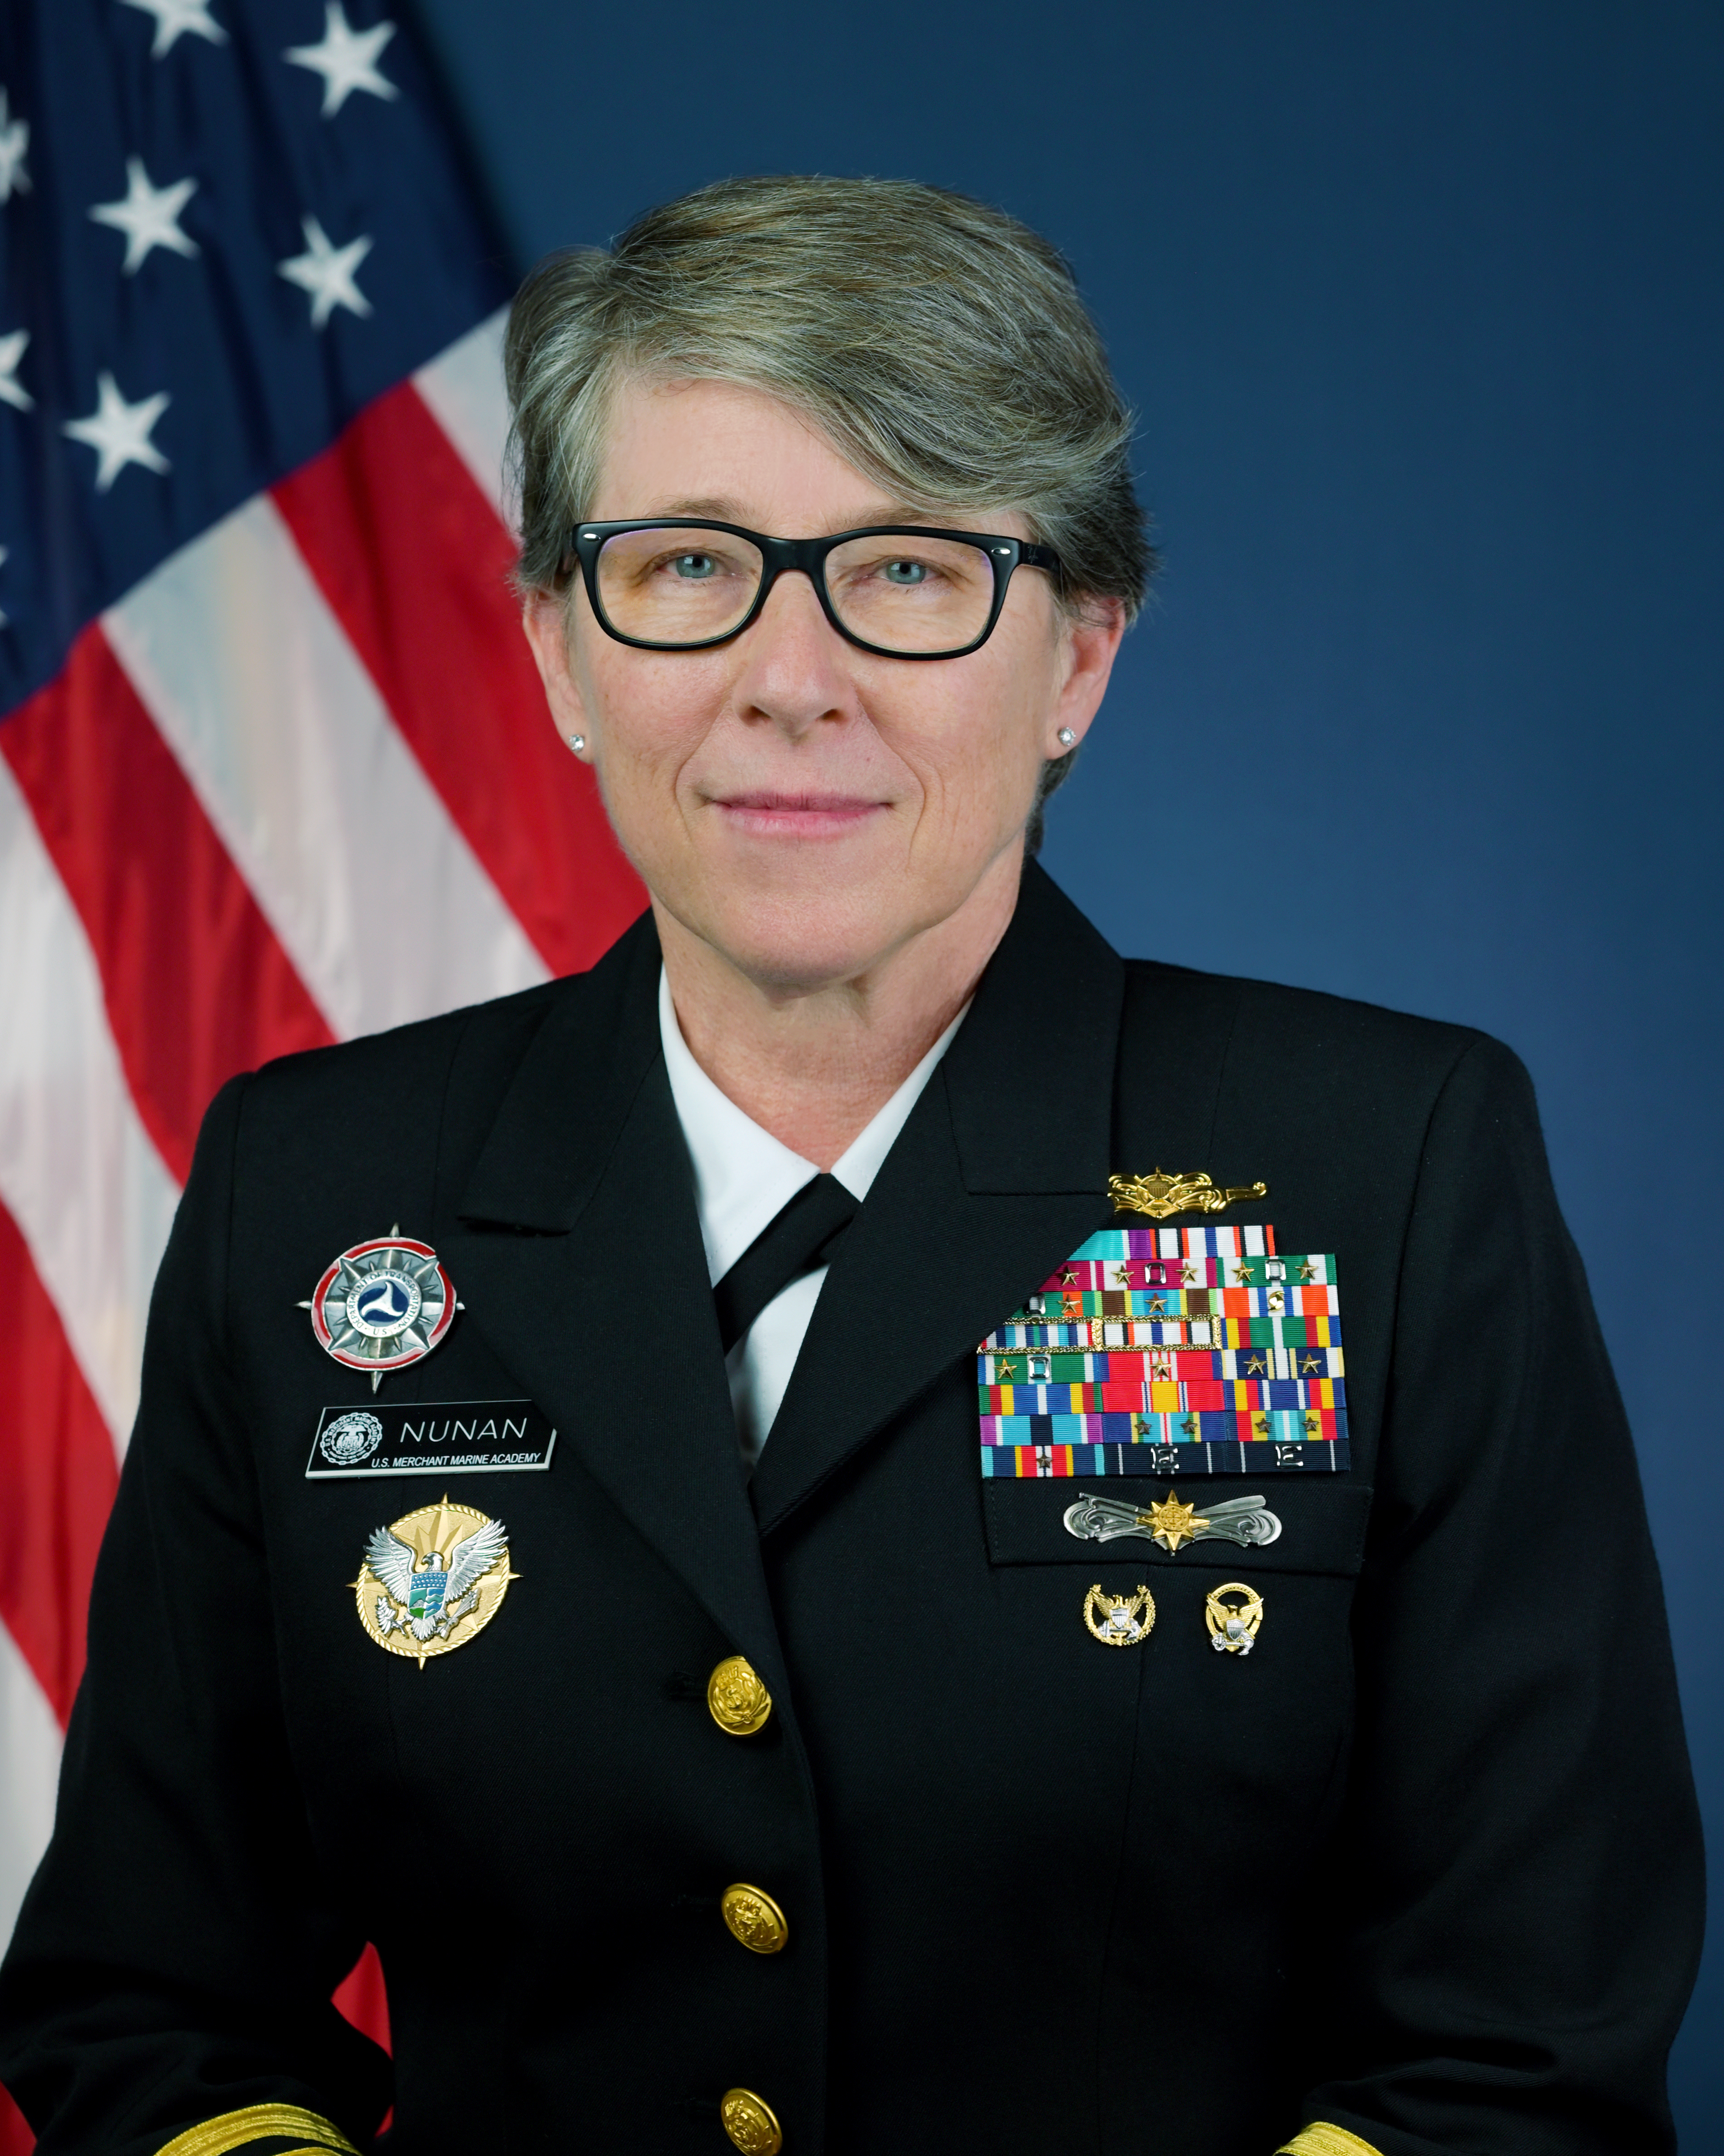 Vice Admiral Joanna M. Nunan